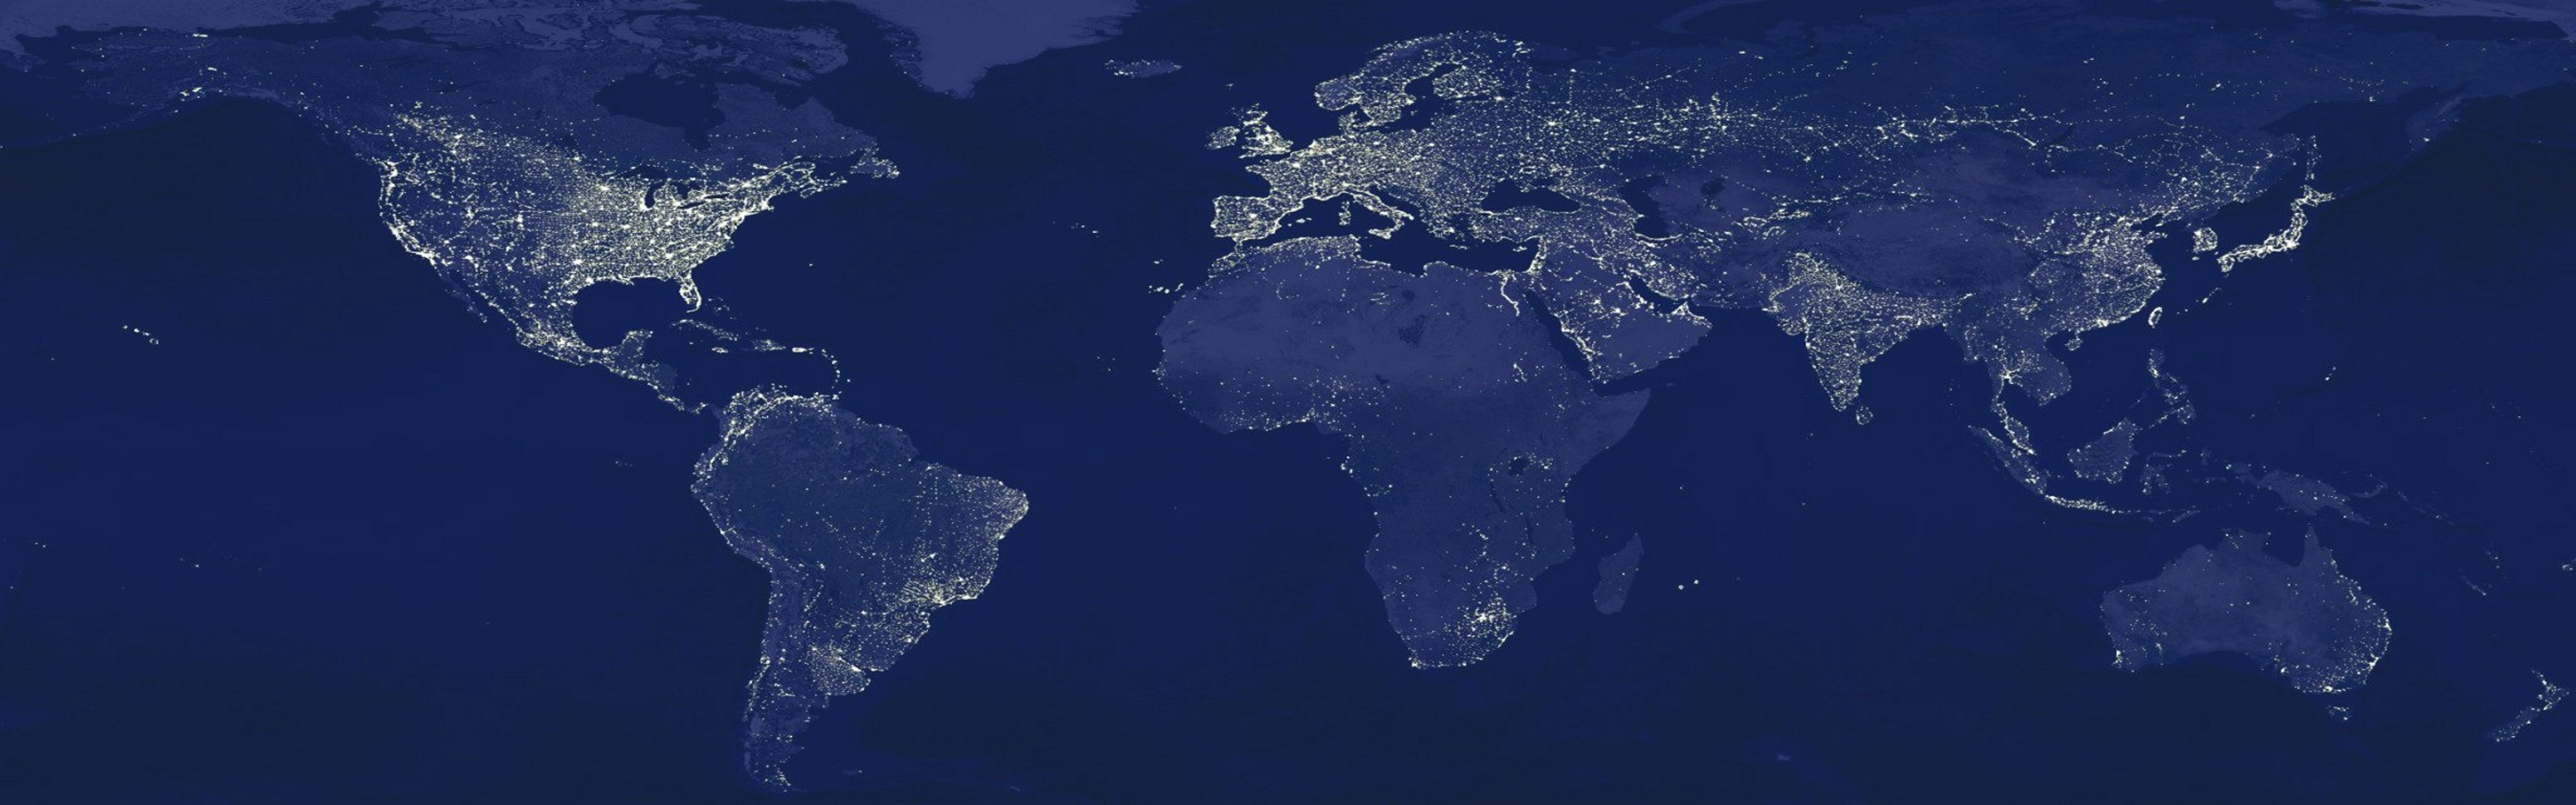 light, night, Earth, globes, maps, world map - desktop wallpaper